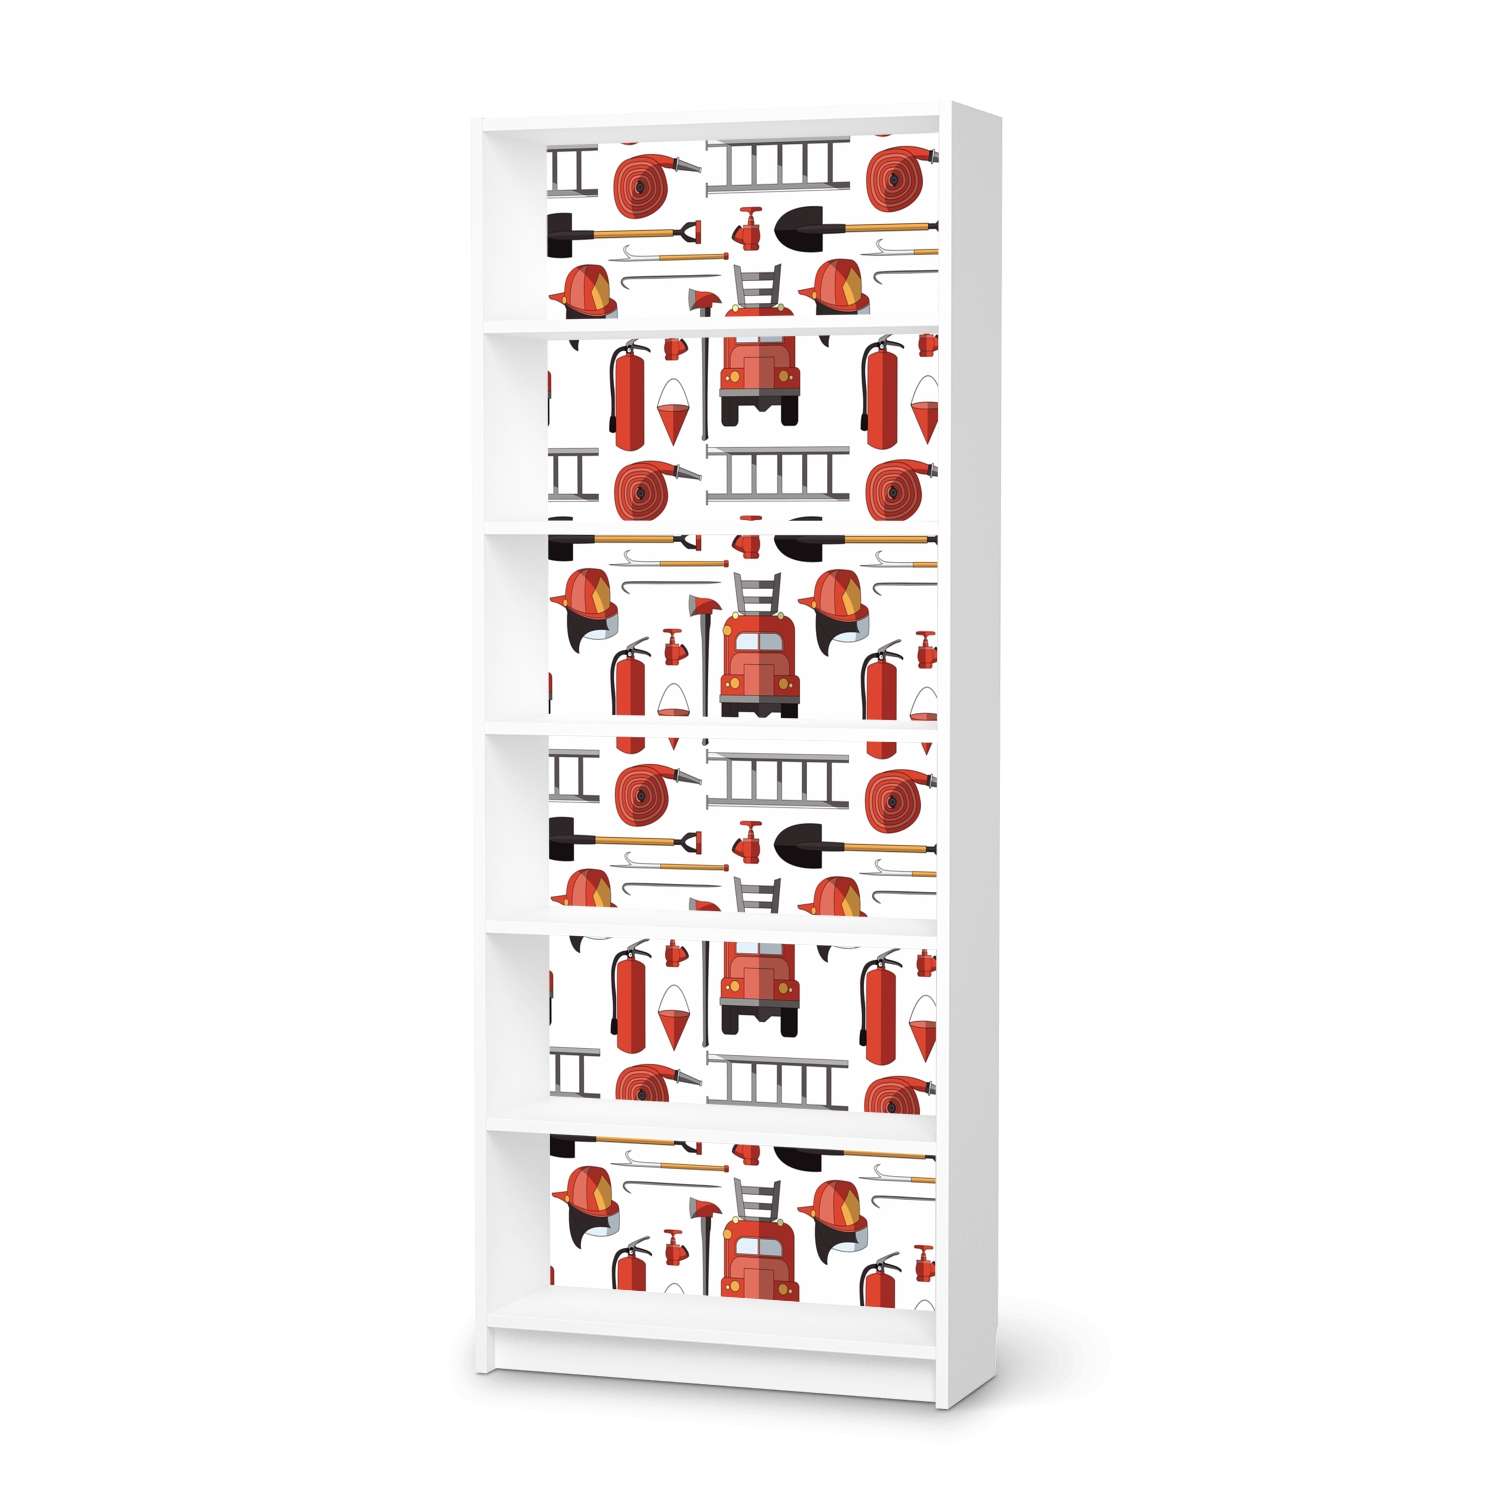 Klebefolie IKEA Billy Regal 6 F?cher - Design: Firefighter von creatisto